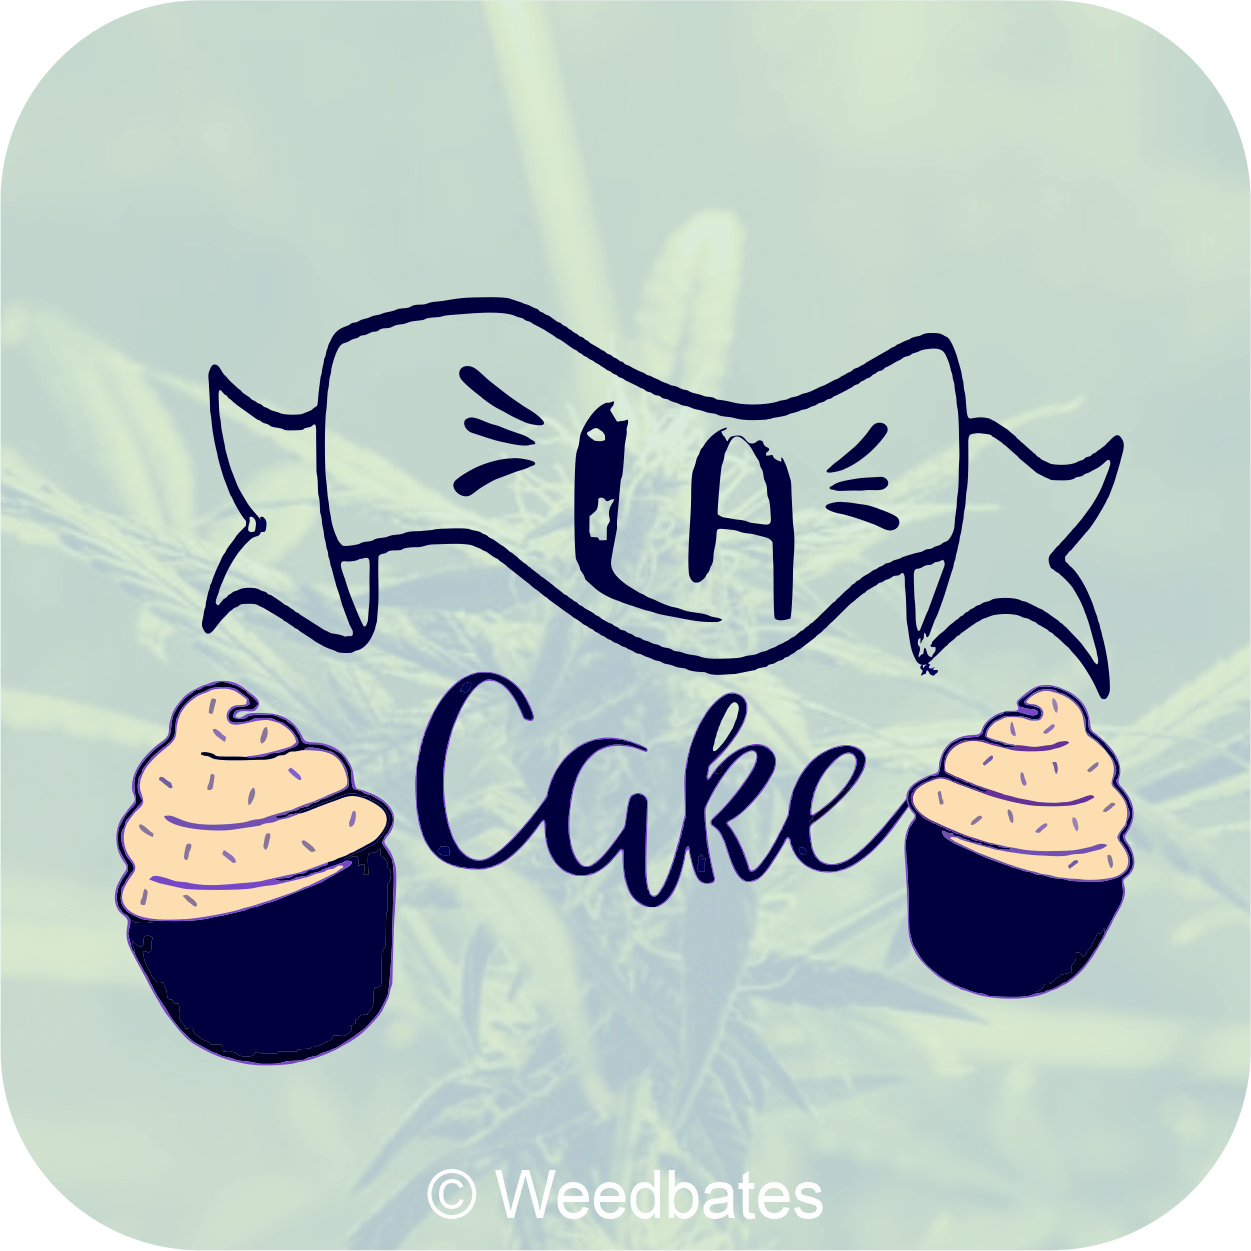 LA Kush Cake cannabis strain